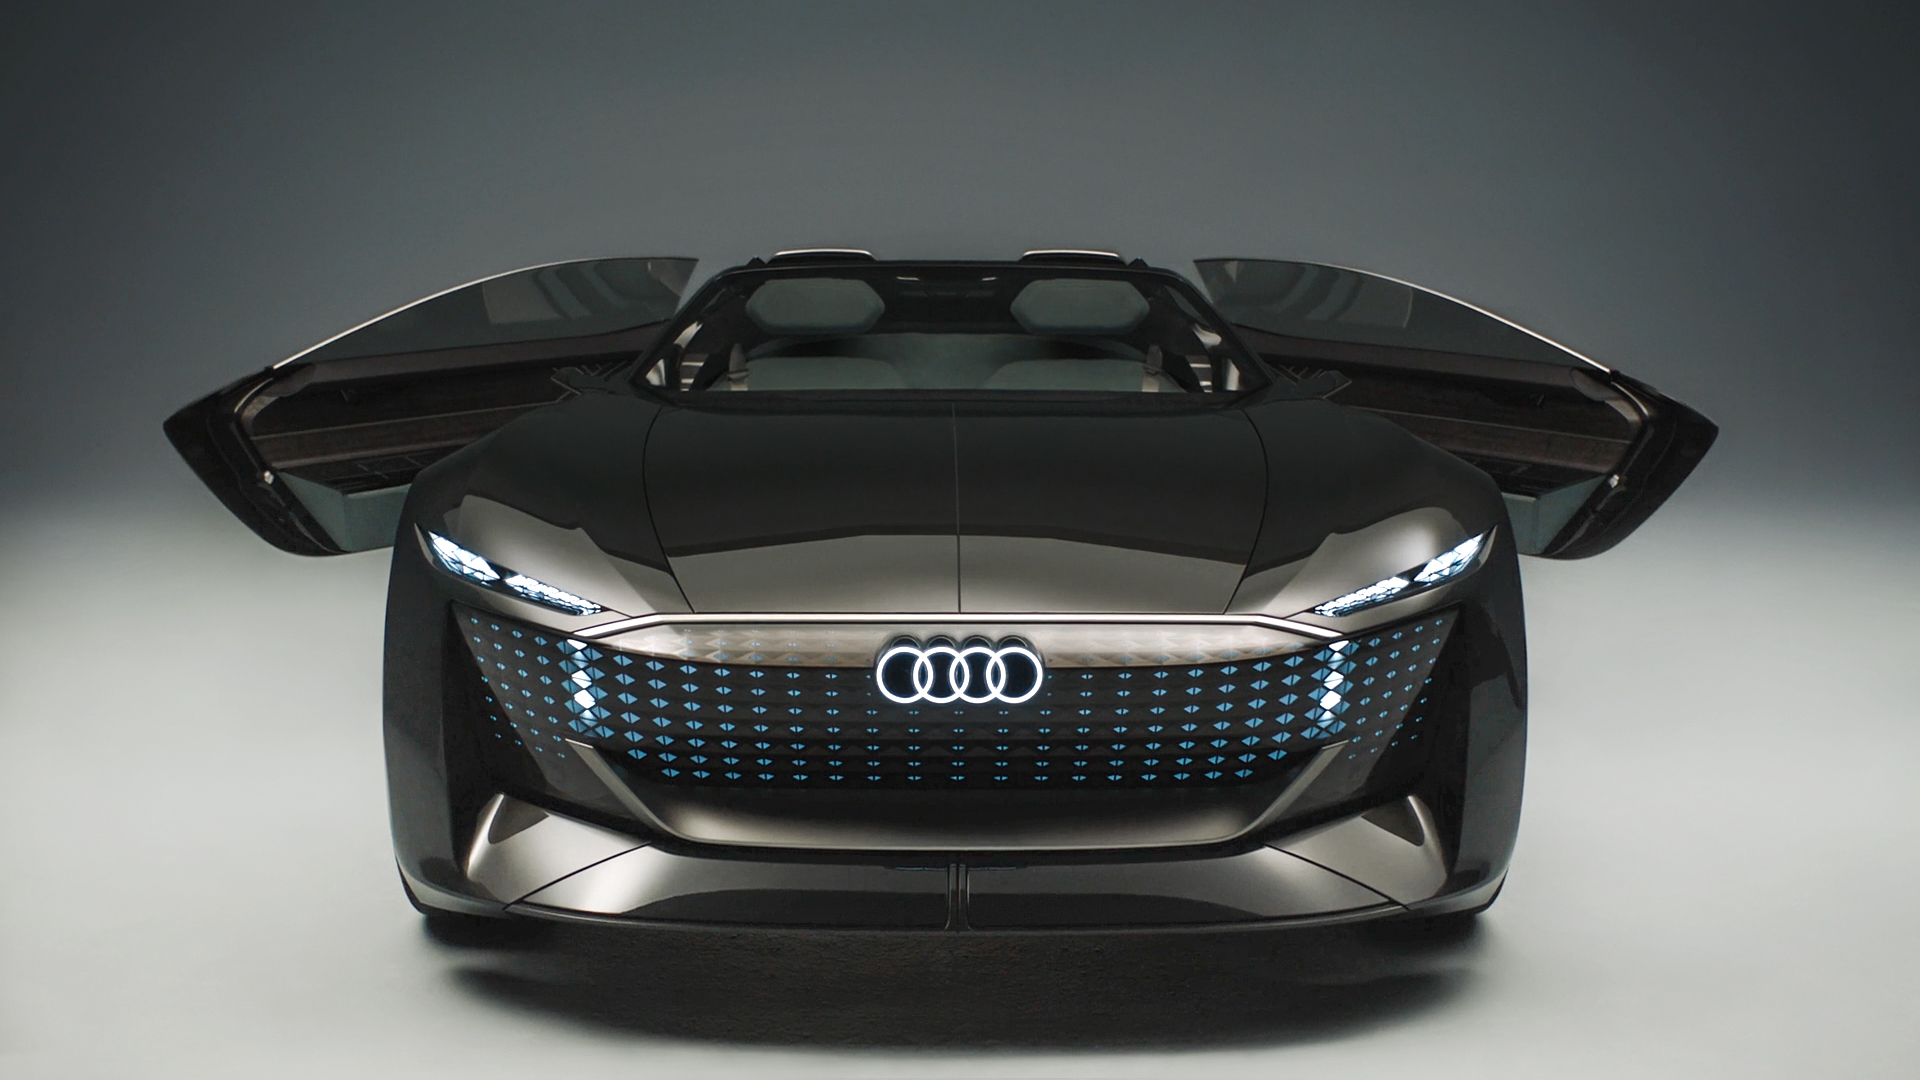 Vue frontale du concept Audi skysphere.